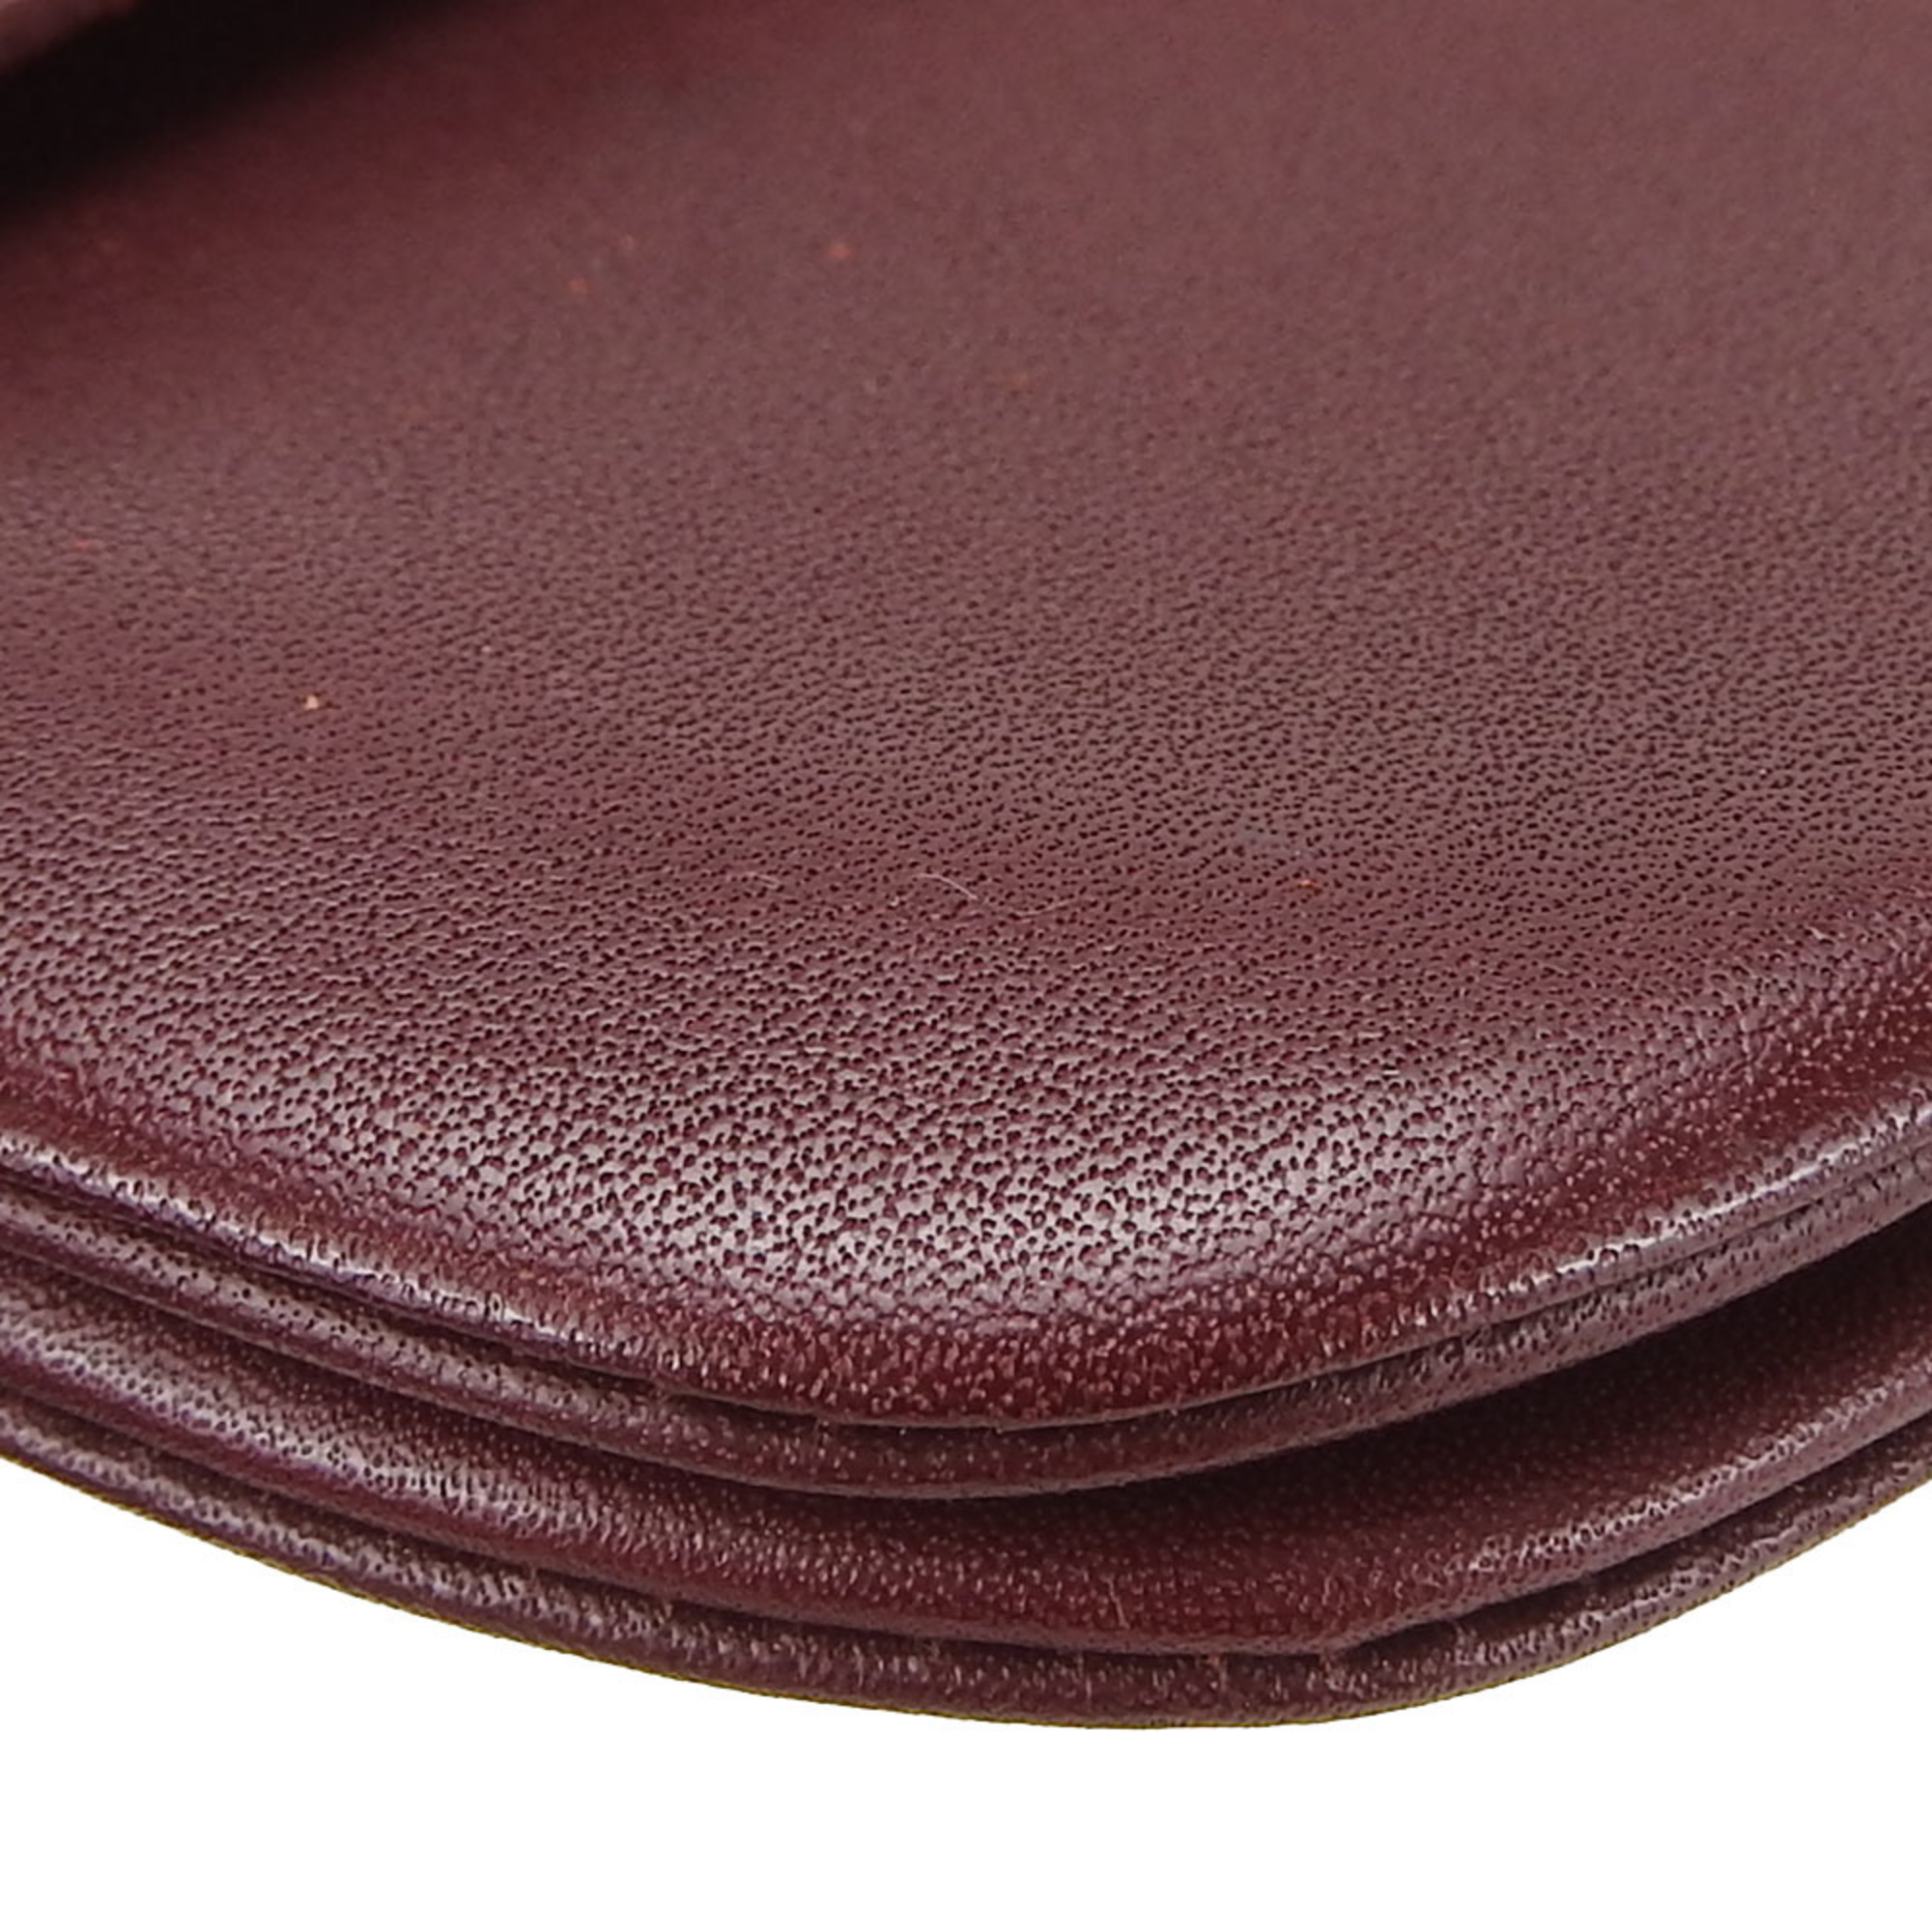 Cartier pouch must line leather bordeaux accessories de cartier ladies CARTIER